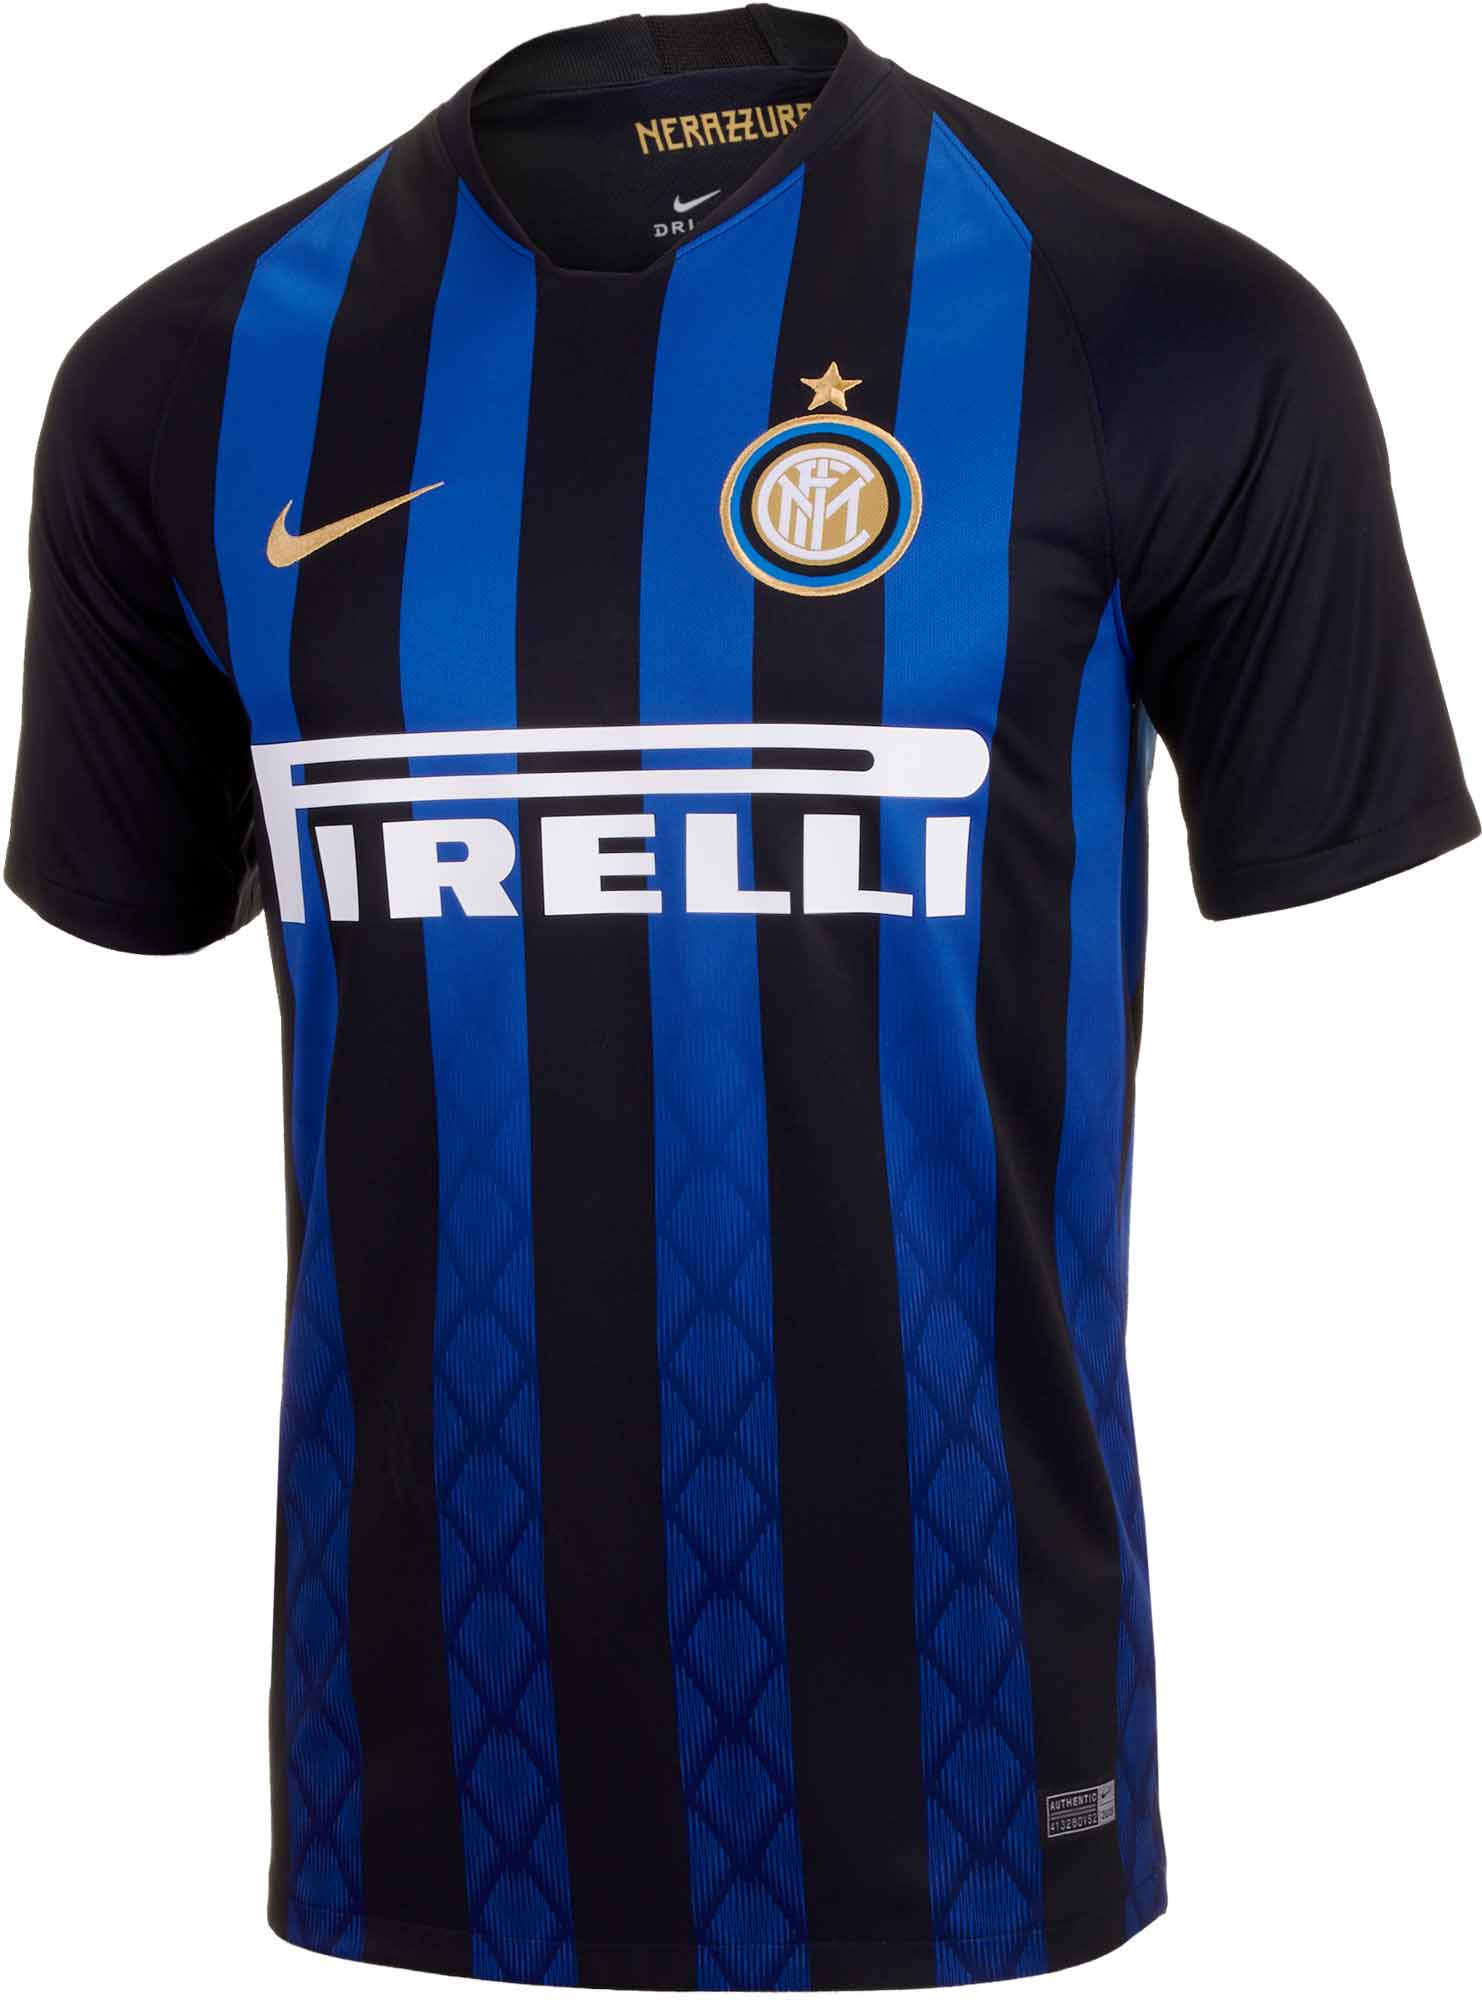 2018/19 Nike Inter Milan Home Jersey - Soccer Master